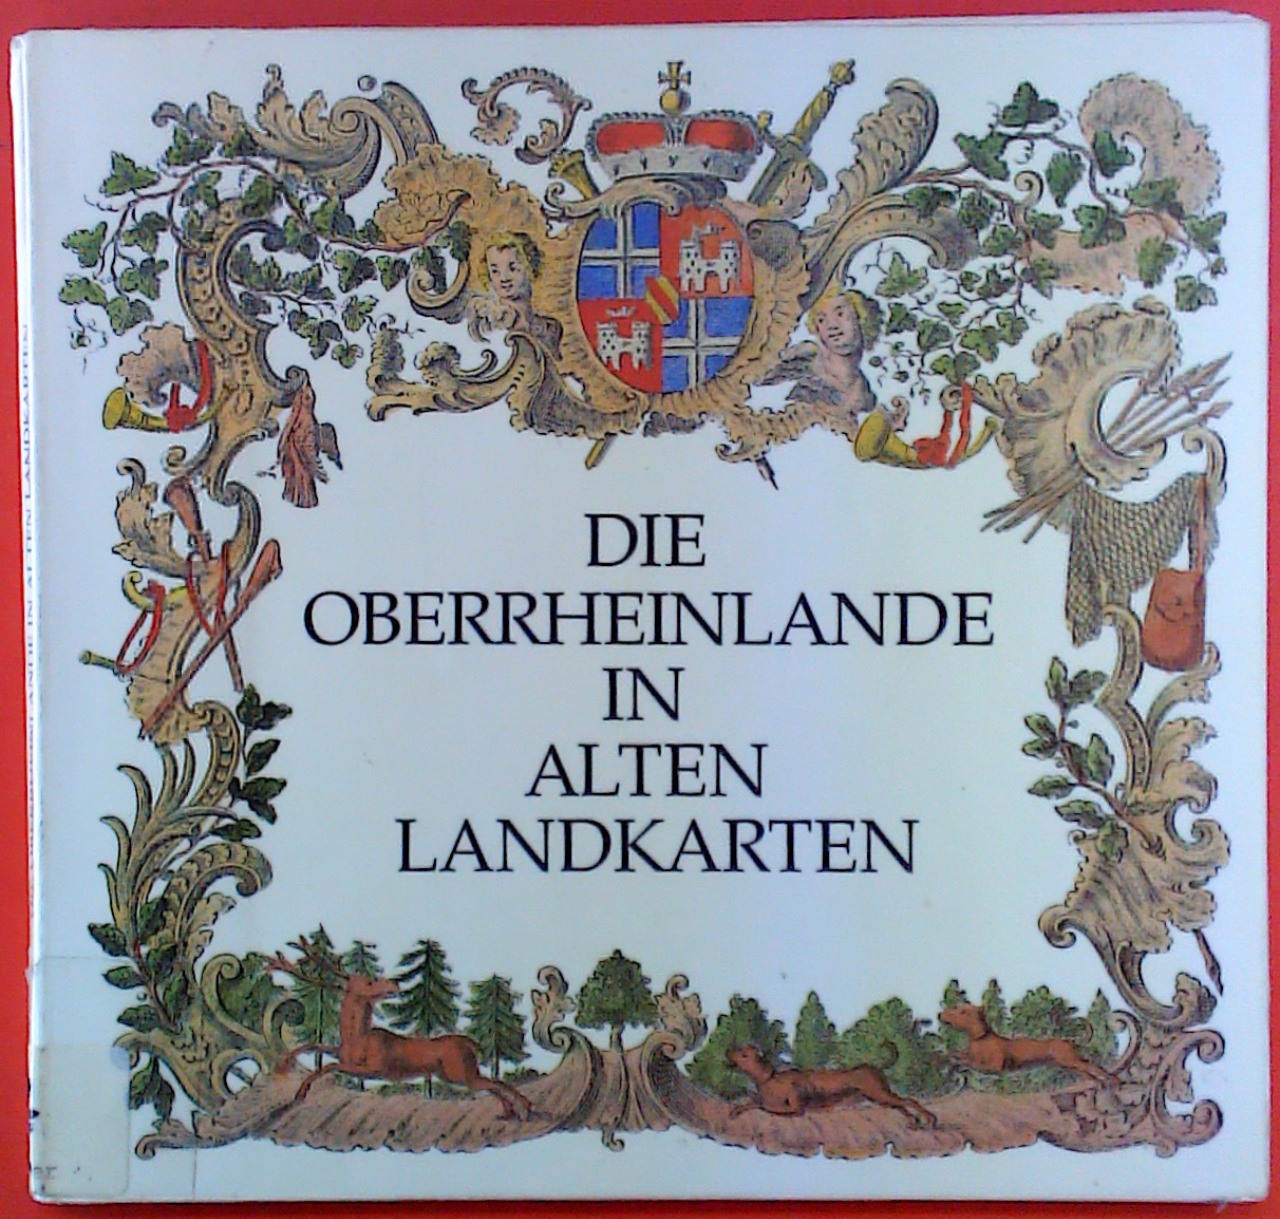 Die Oberrheinlande in alten Landkarten. vom dreißigjährigen Krieg bis Tulla, eine Ausstellung der Badischen Landesbibliothek - Autorenkollektiv